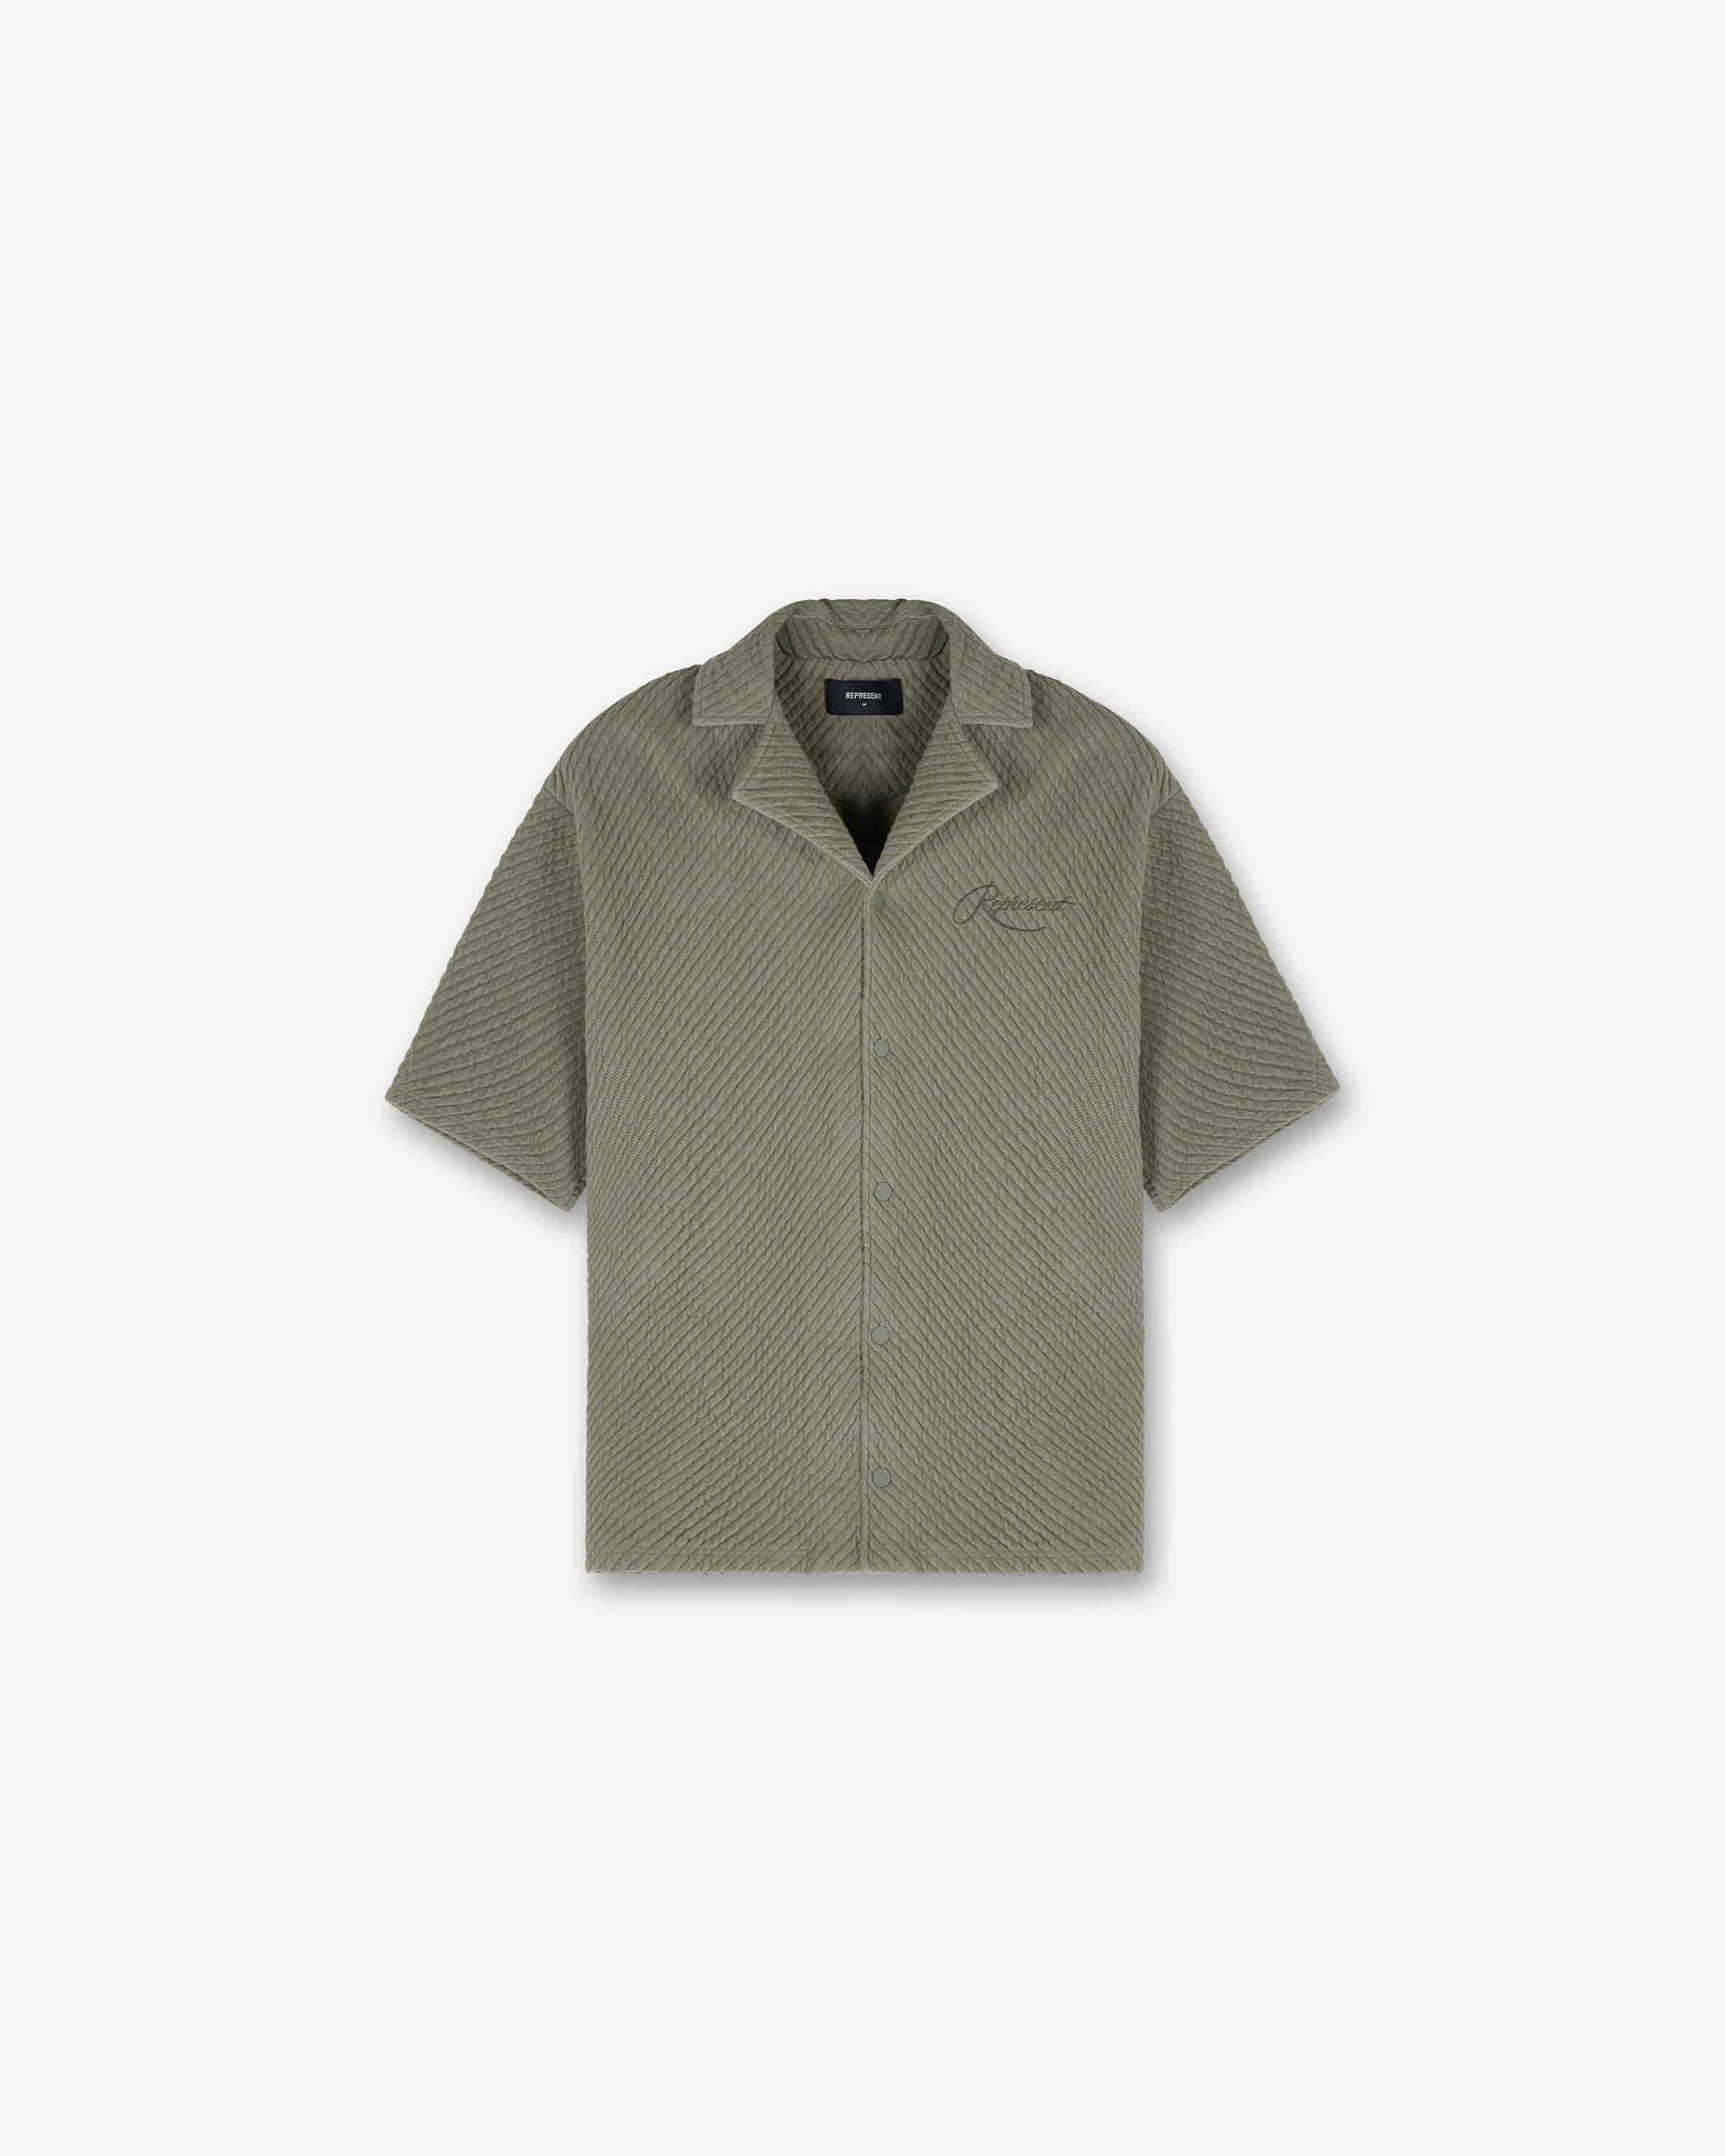 Ottoman Shirt | Khaki Shirts SC23 | Represent Clo